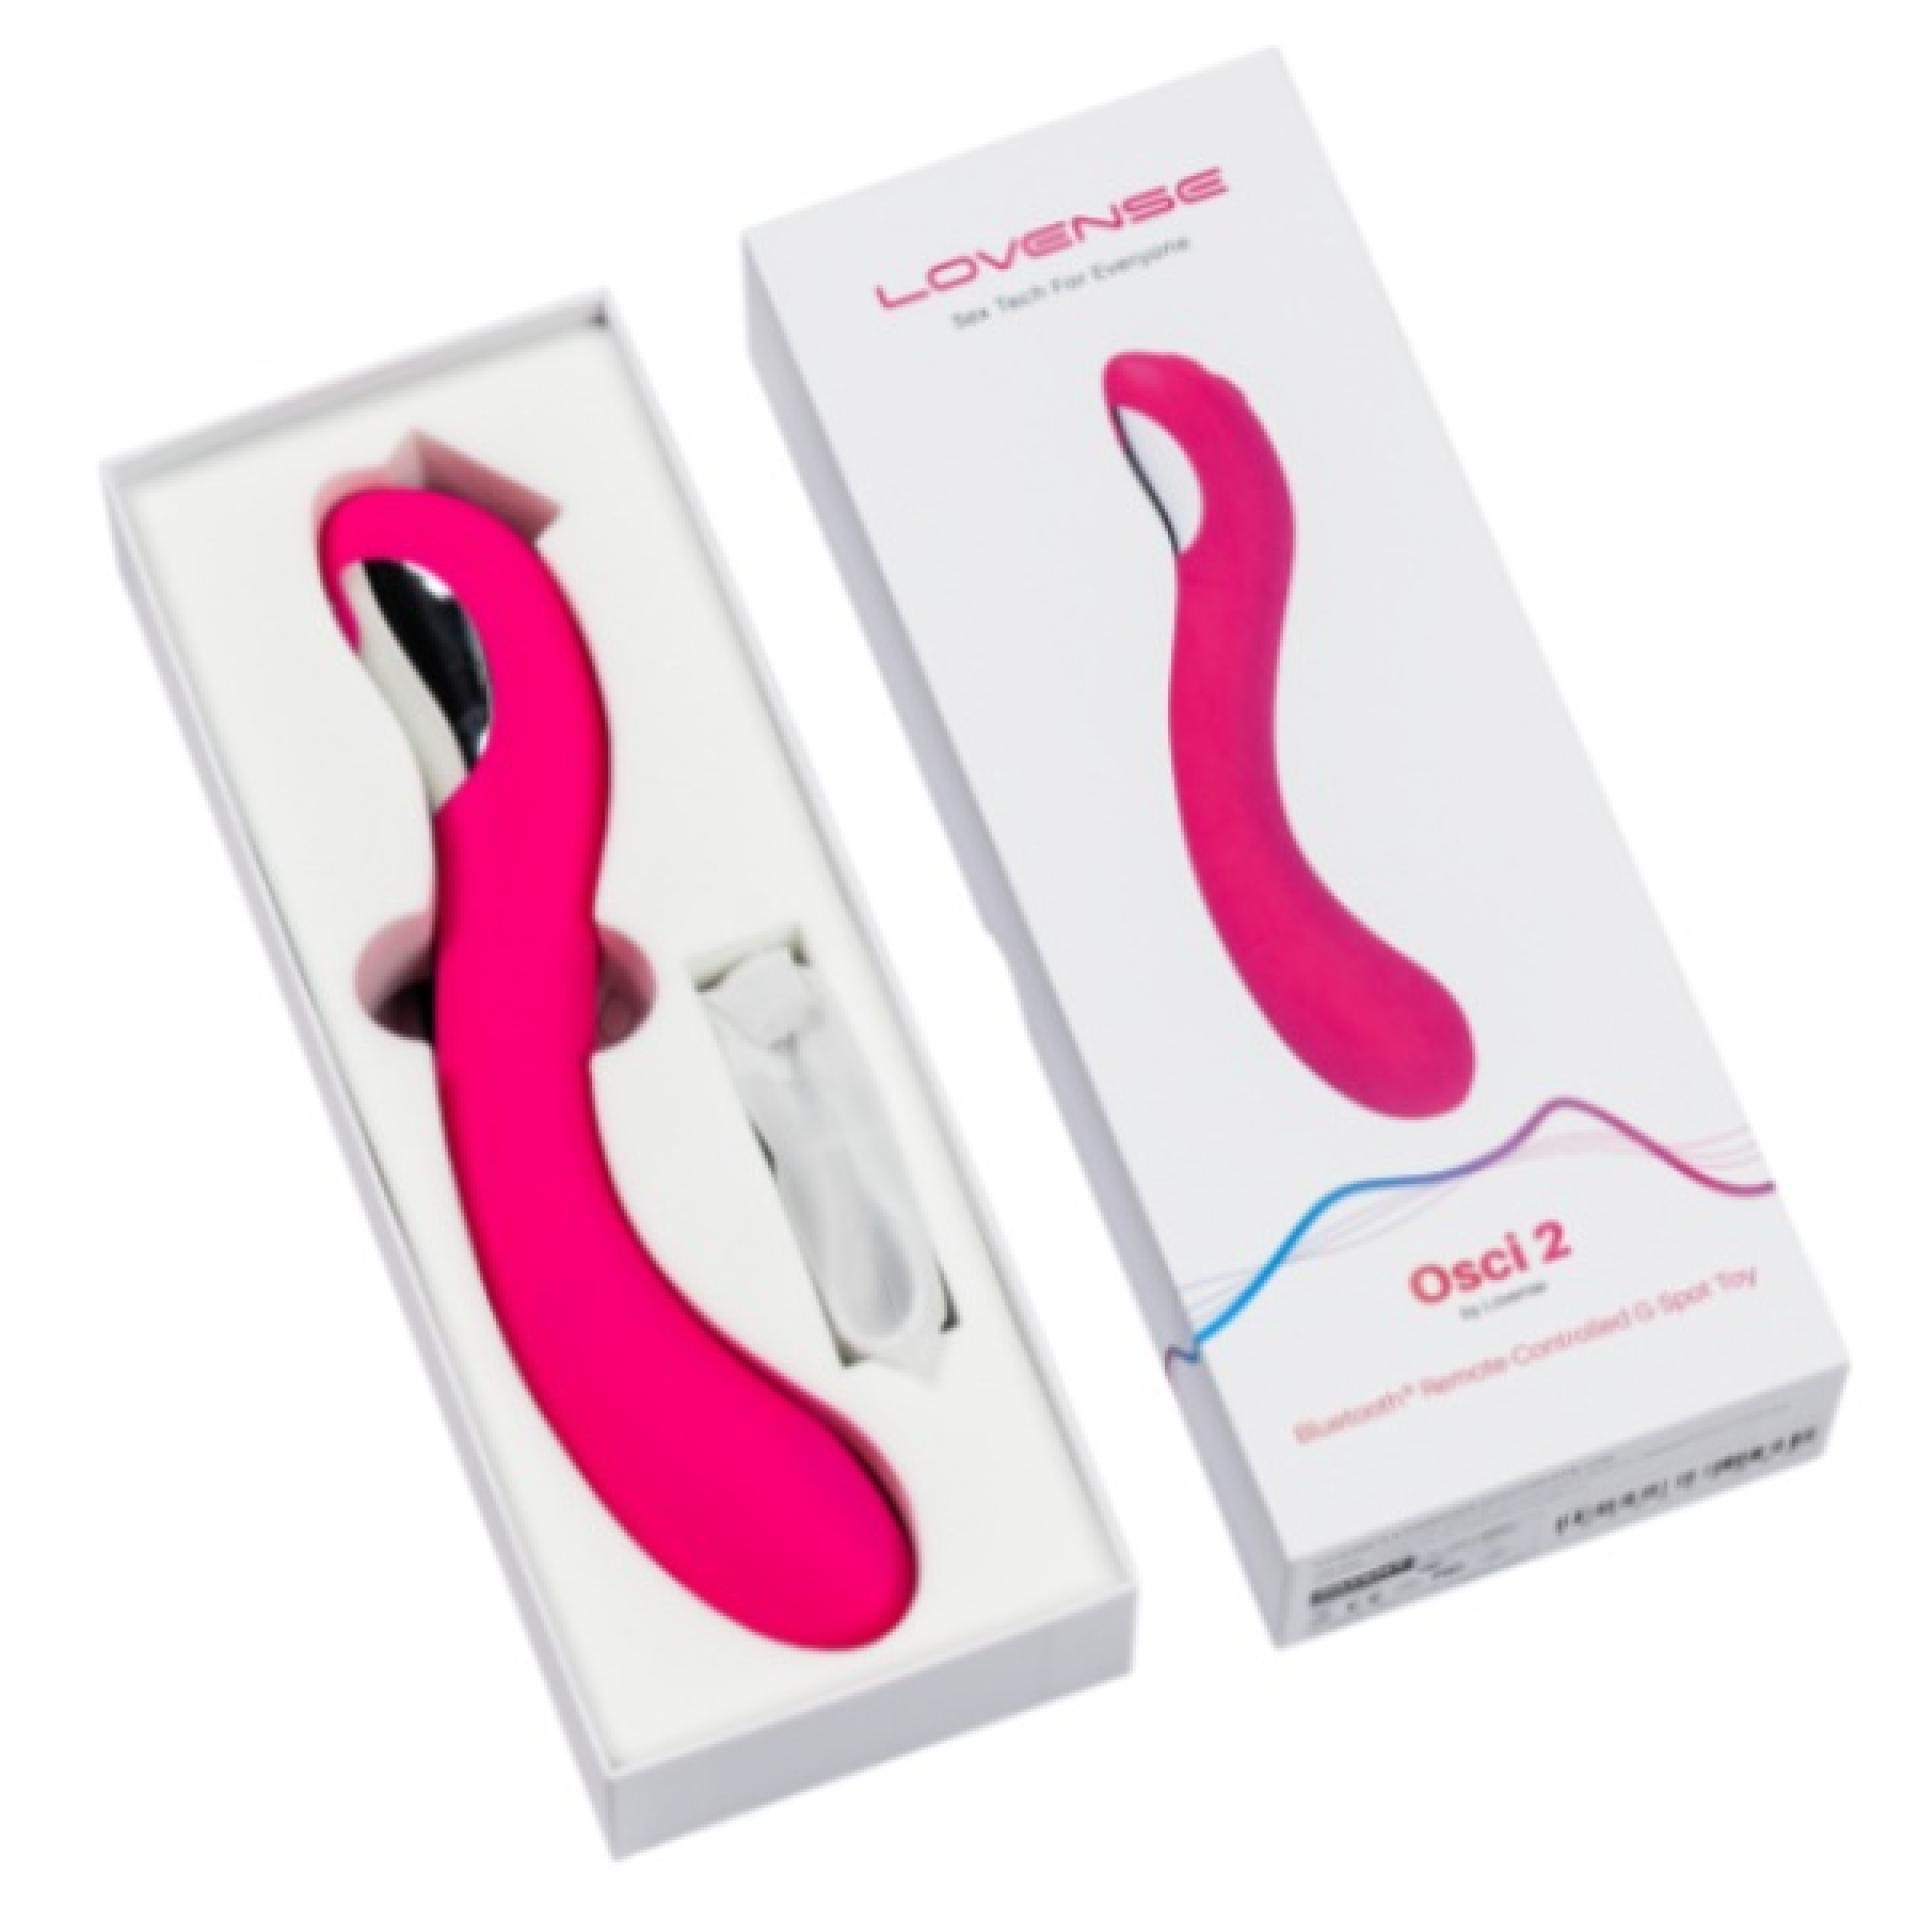 Lovense Osci 2 G-Spot Stimulator Sex Toy